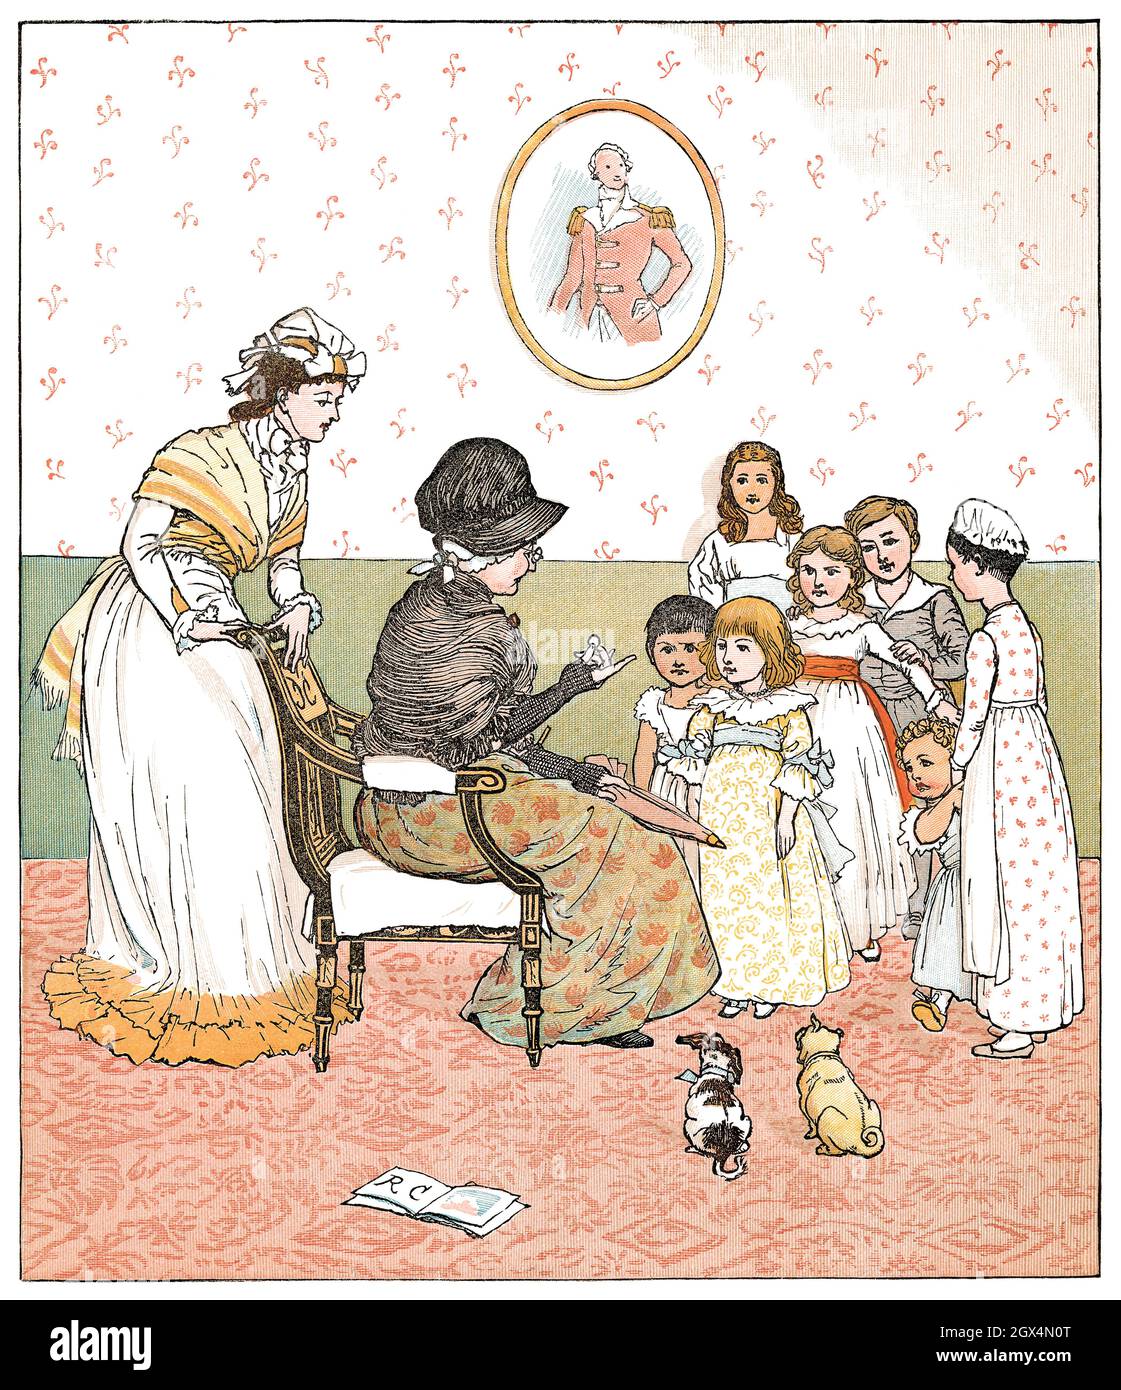 1880 illustrazione d'epoca di Randolph Caldecott per la filastrocca Sing A Song of Sixpence. Foto Stock